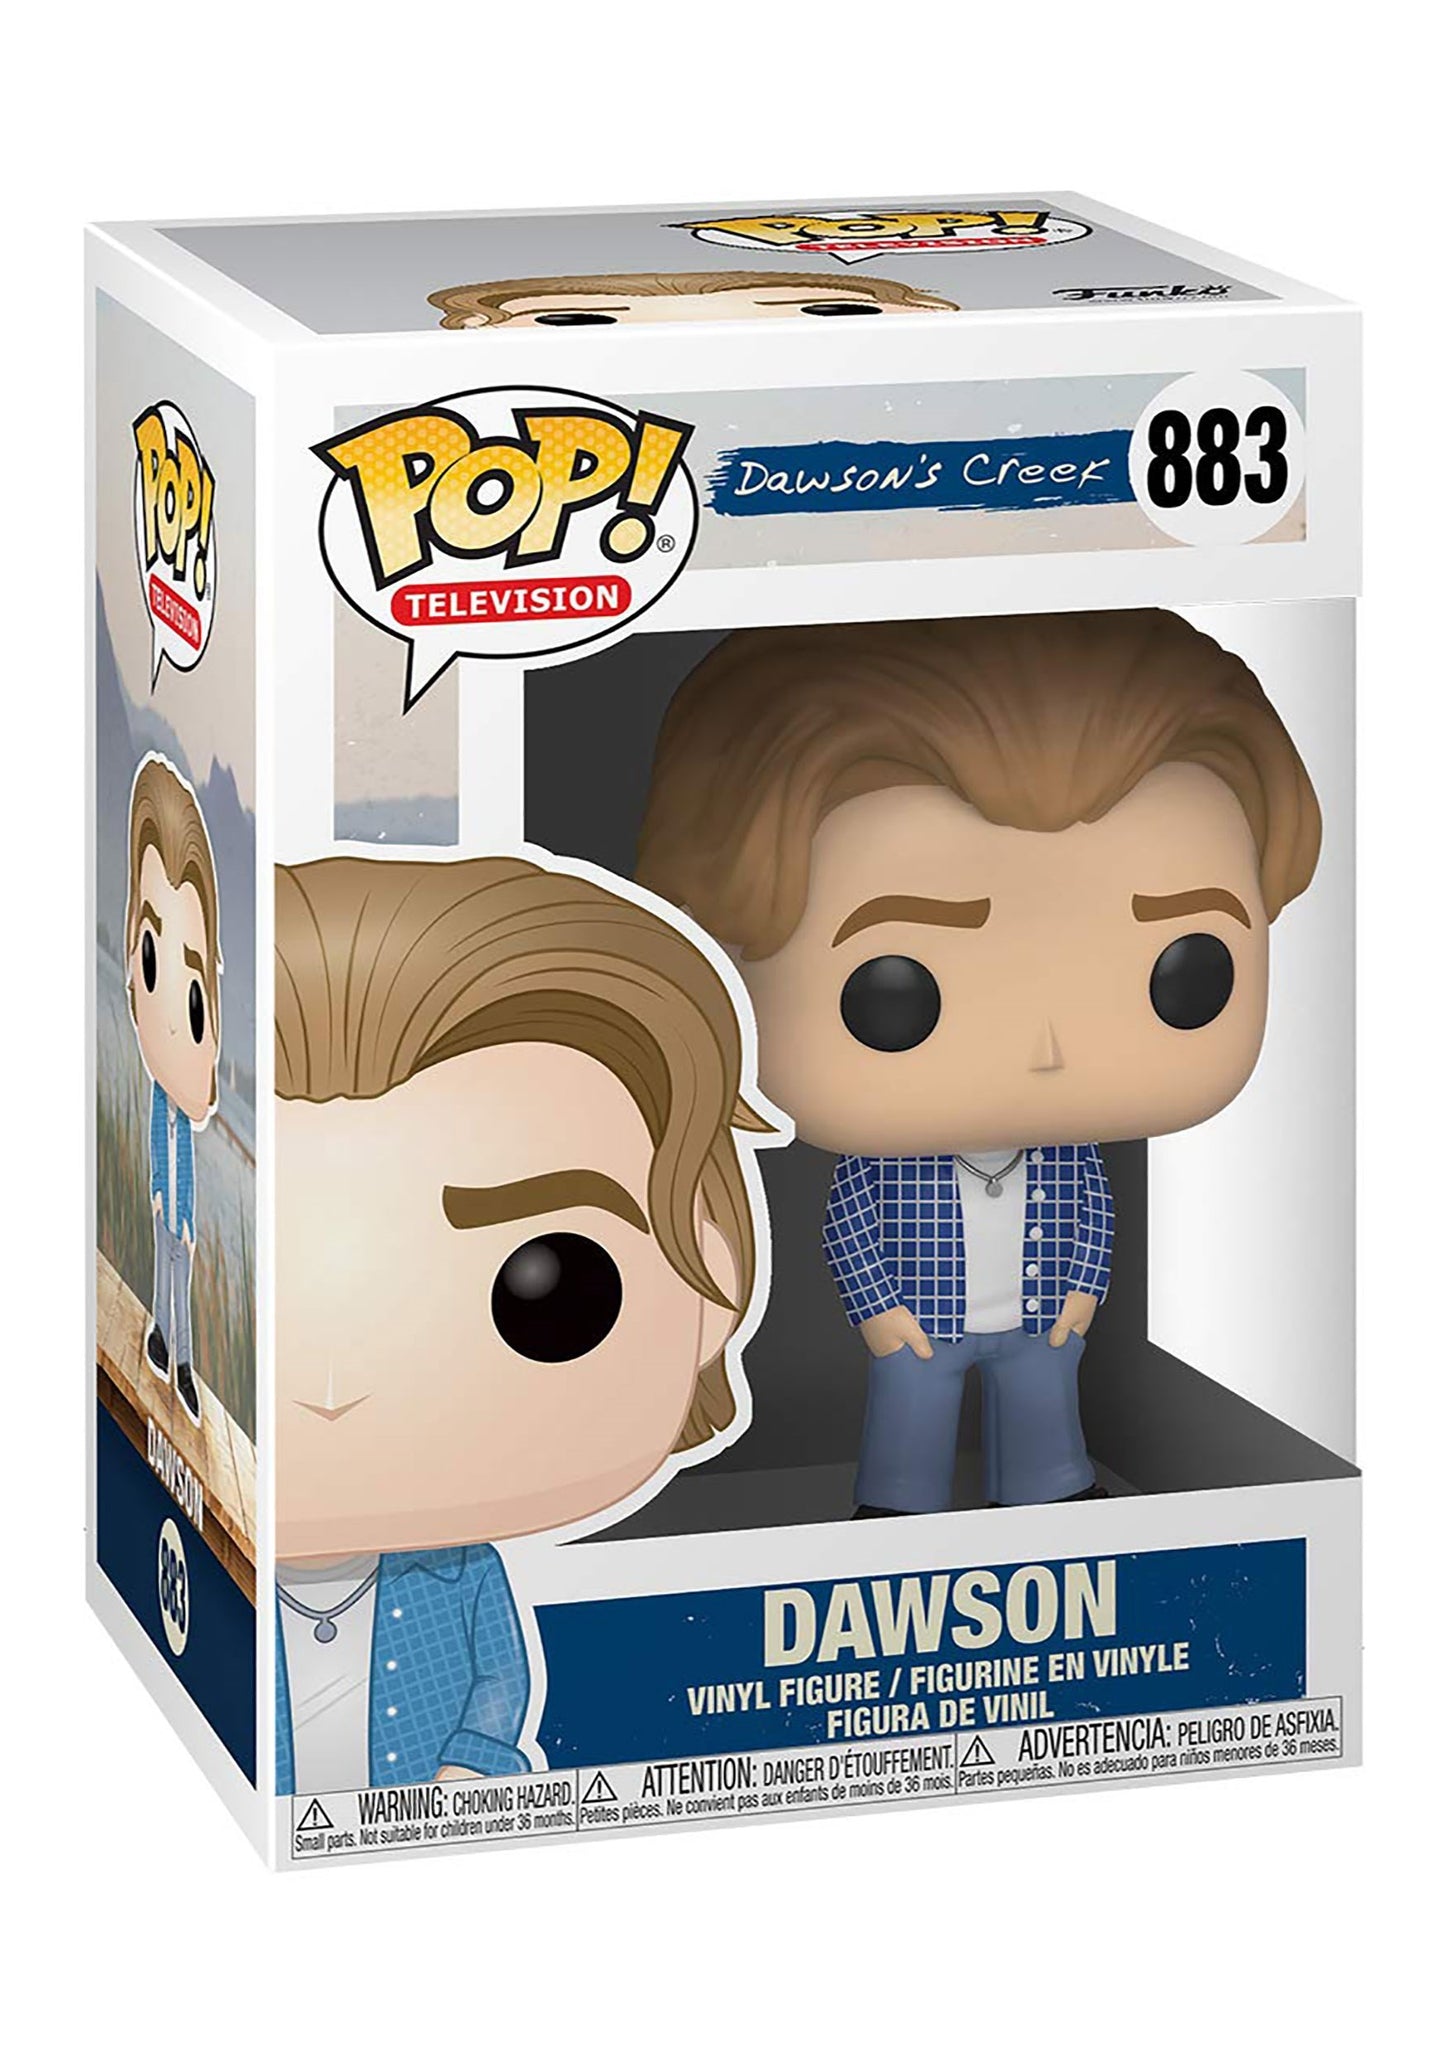 DAWSONS CREEK S1 DAWSON #883 POP